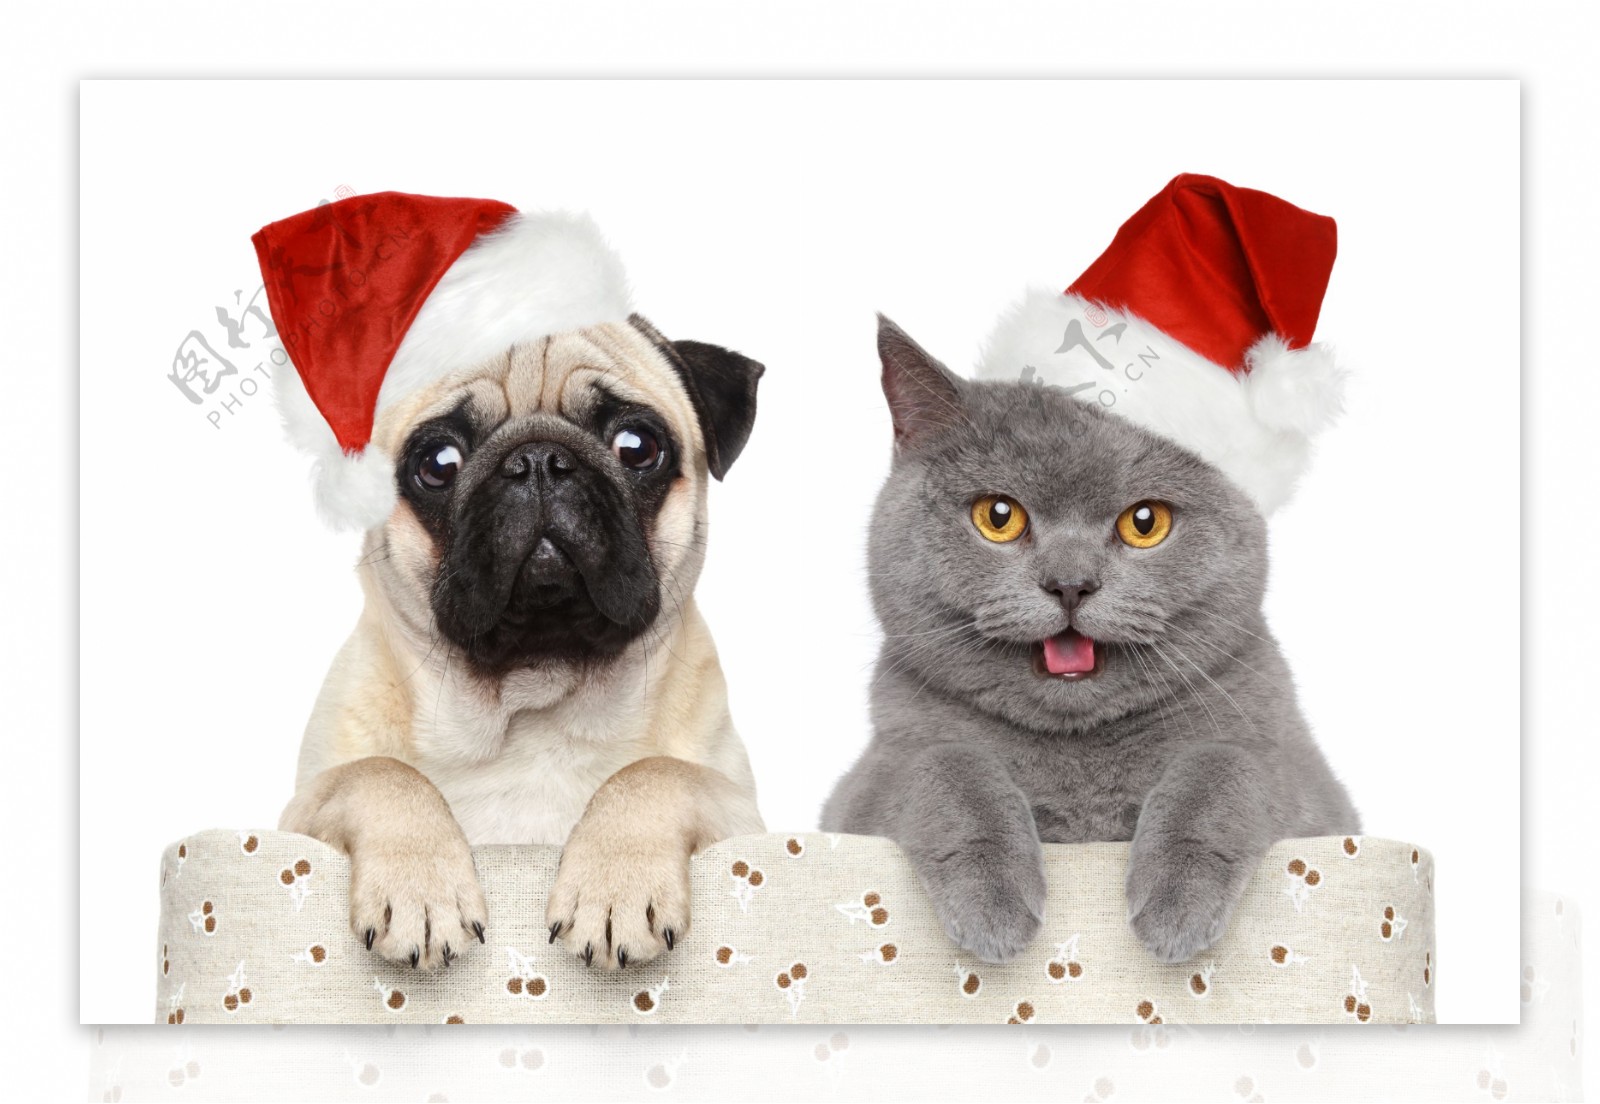 戴圣诞帽的猫和狗